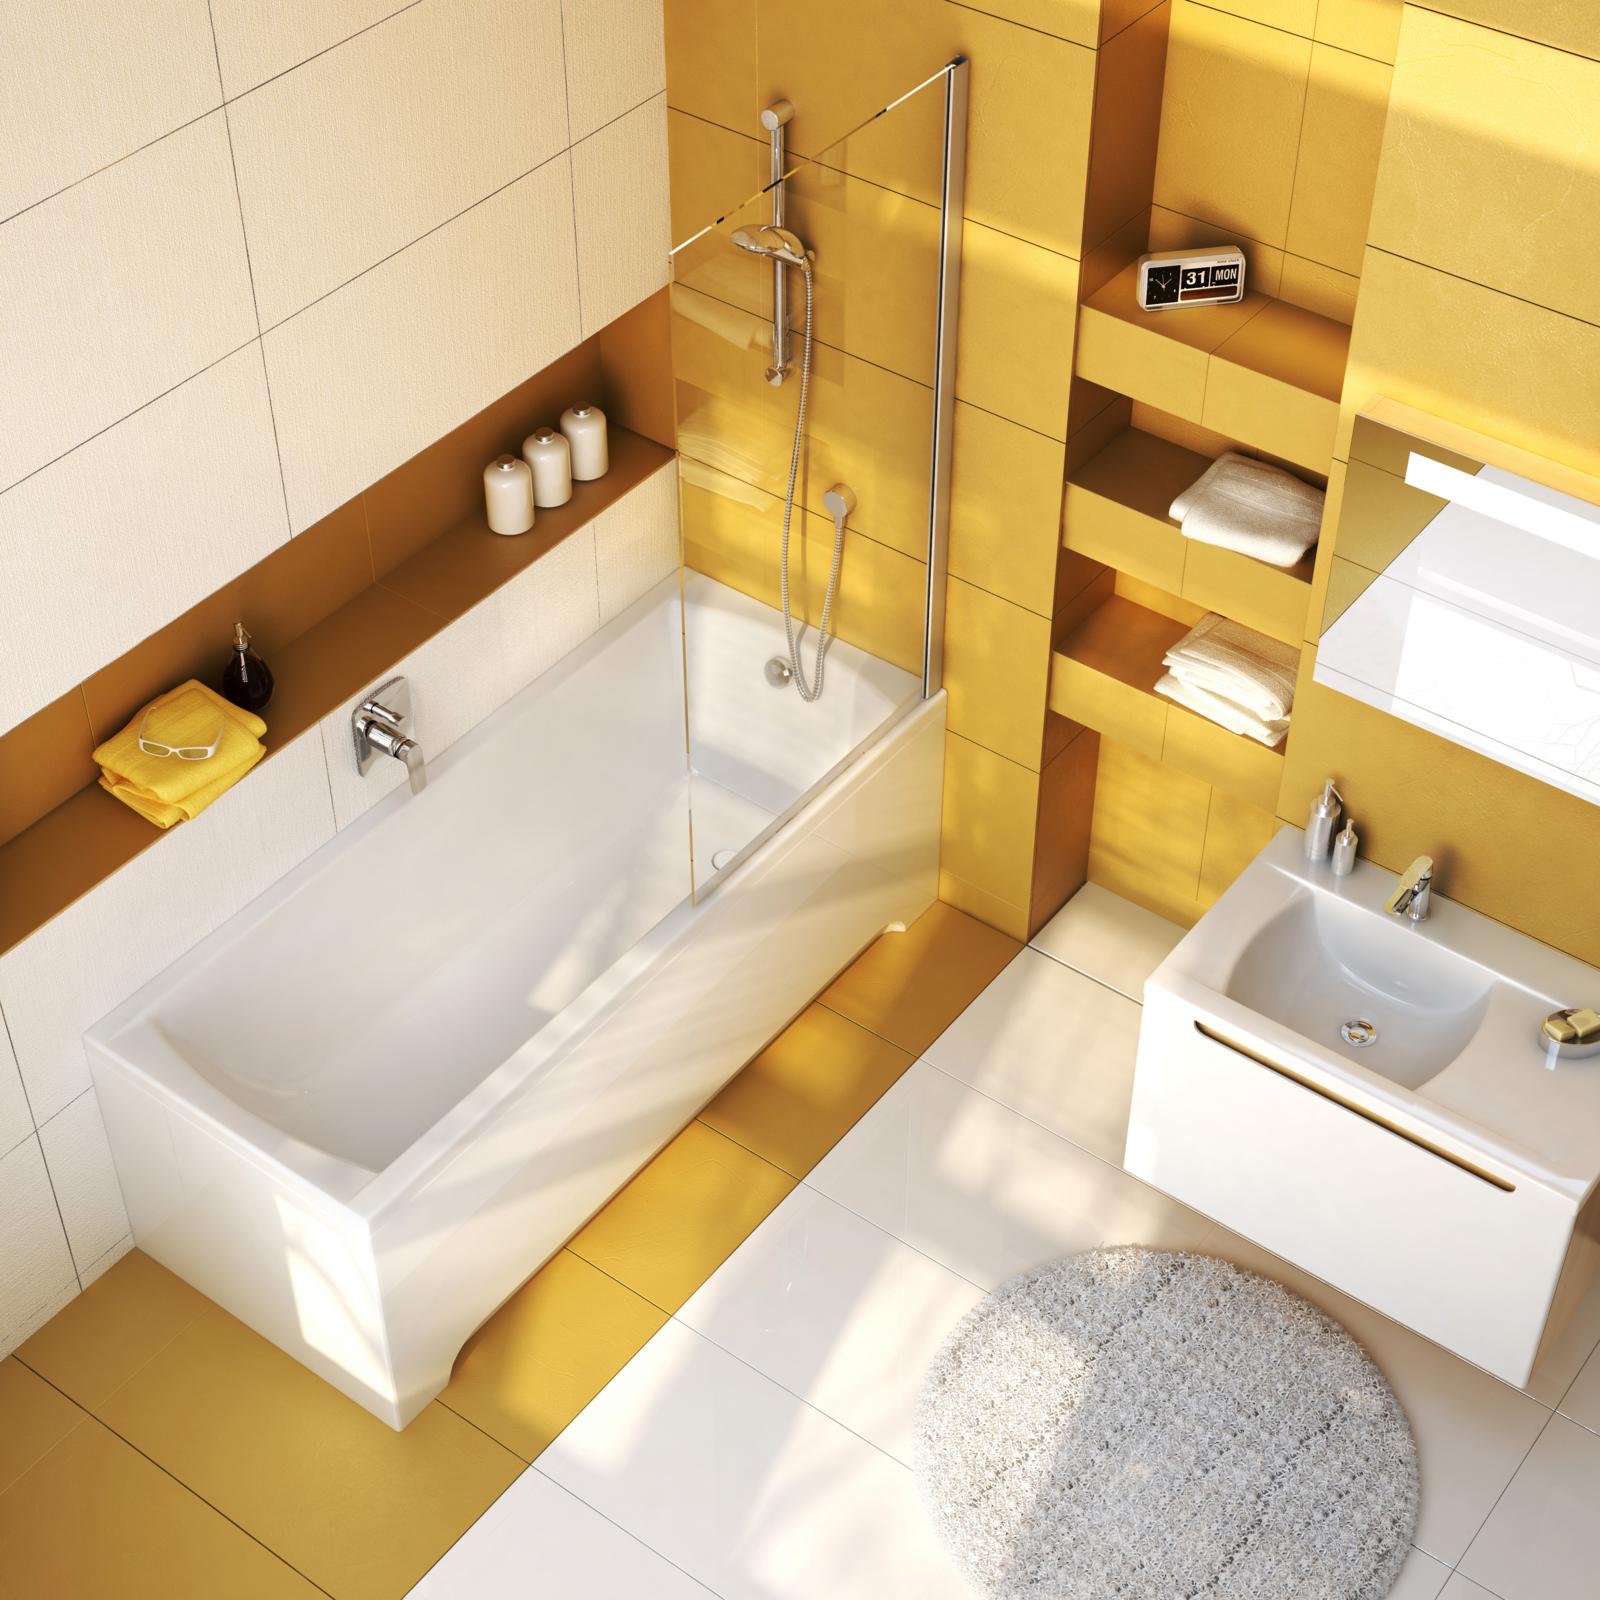 A Classic fürdőkád letisztult, időtálló formatervezése harmóniát csempész a fürdőszobába.